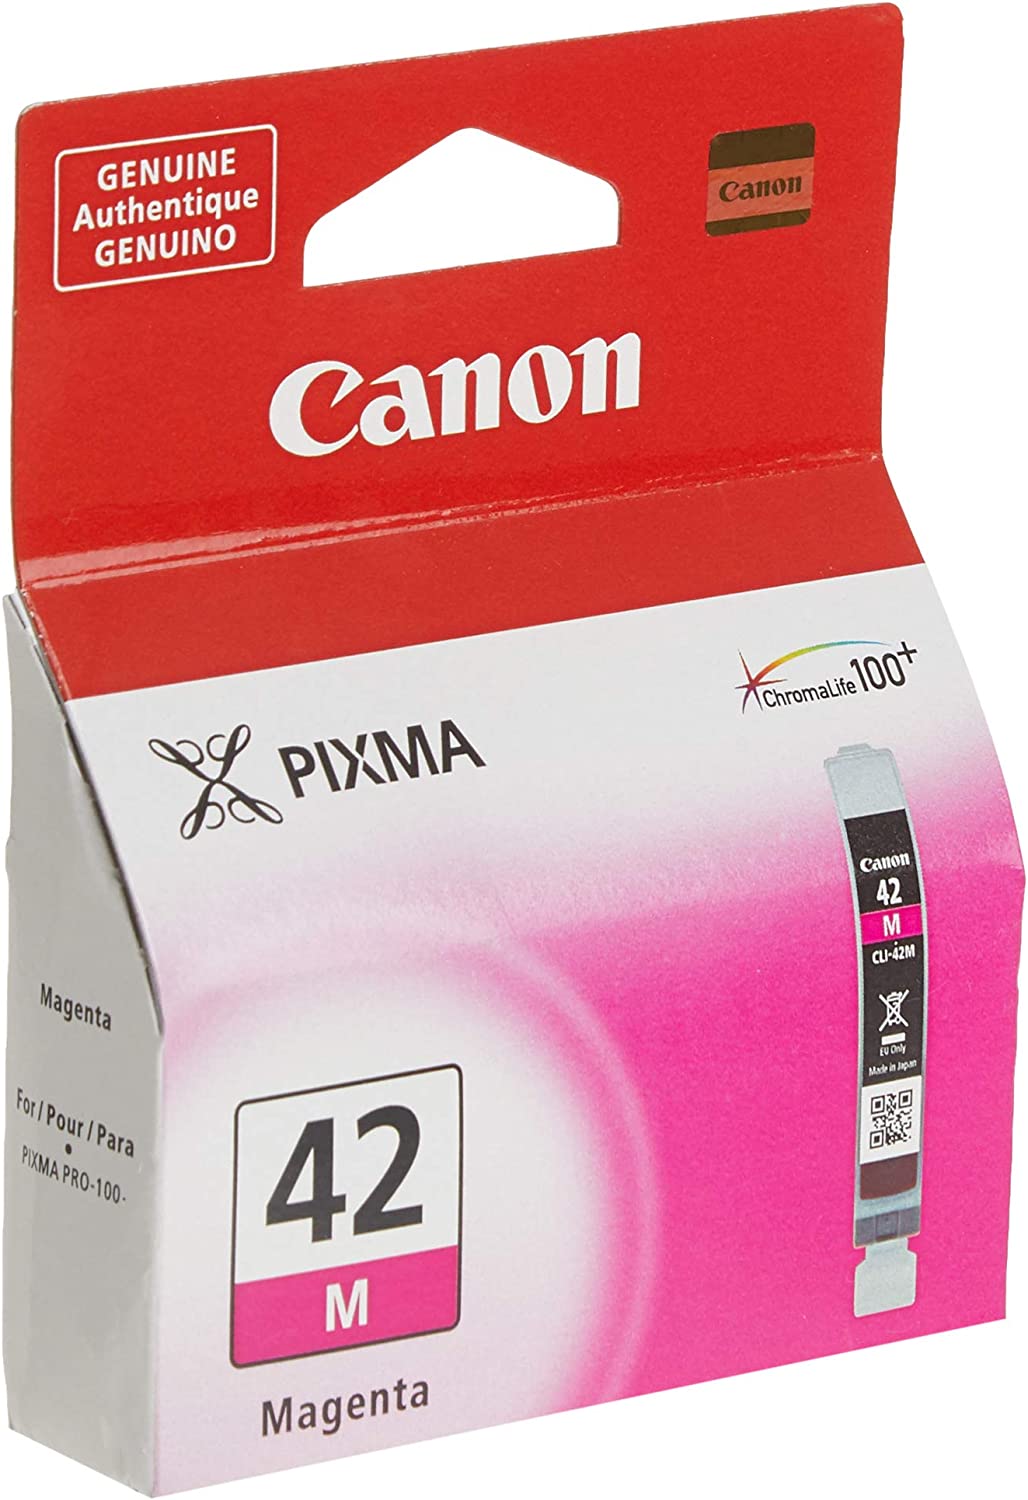 Canon CLI-42 MAGENTA Compatible to PRO-100 Printers